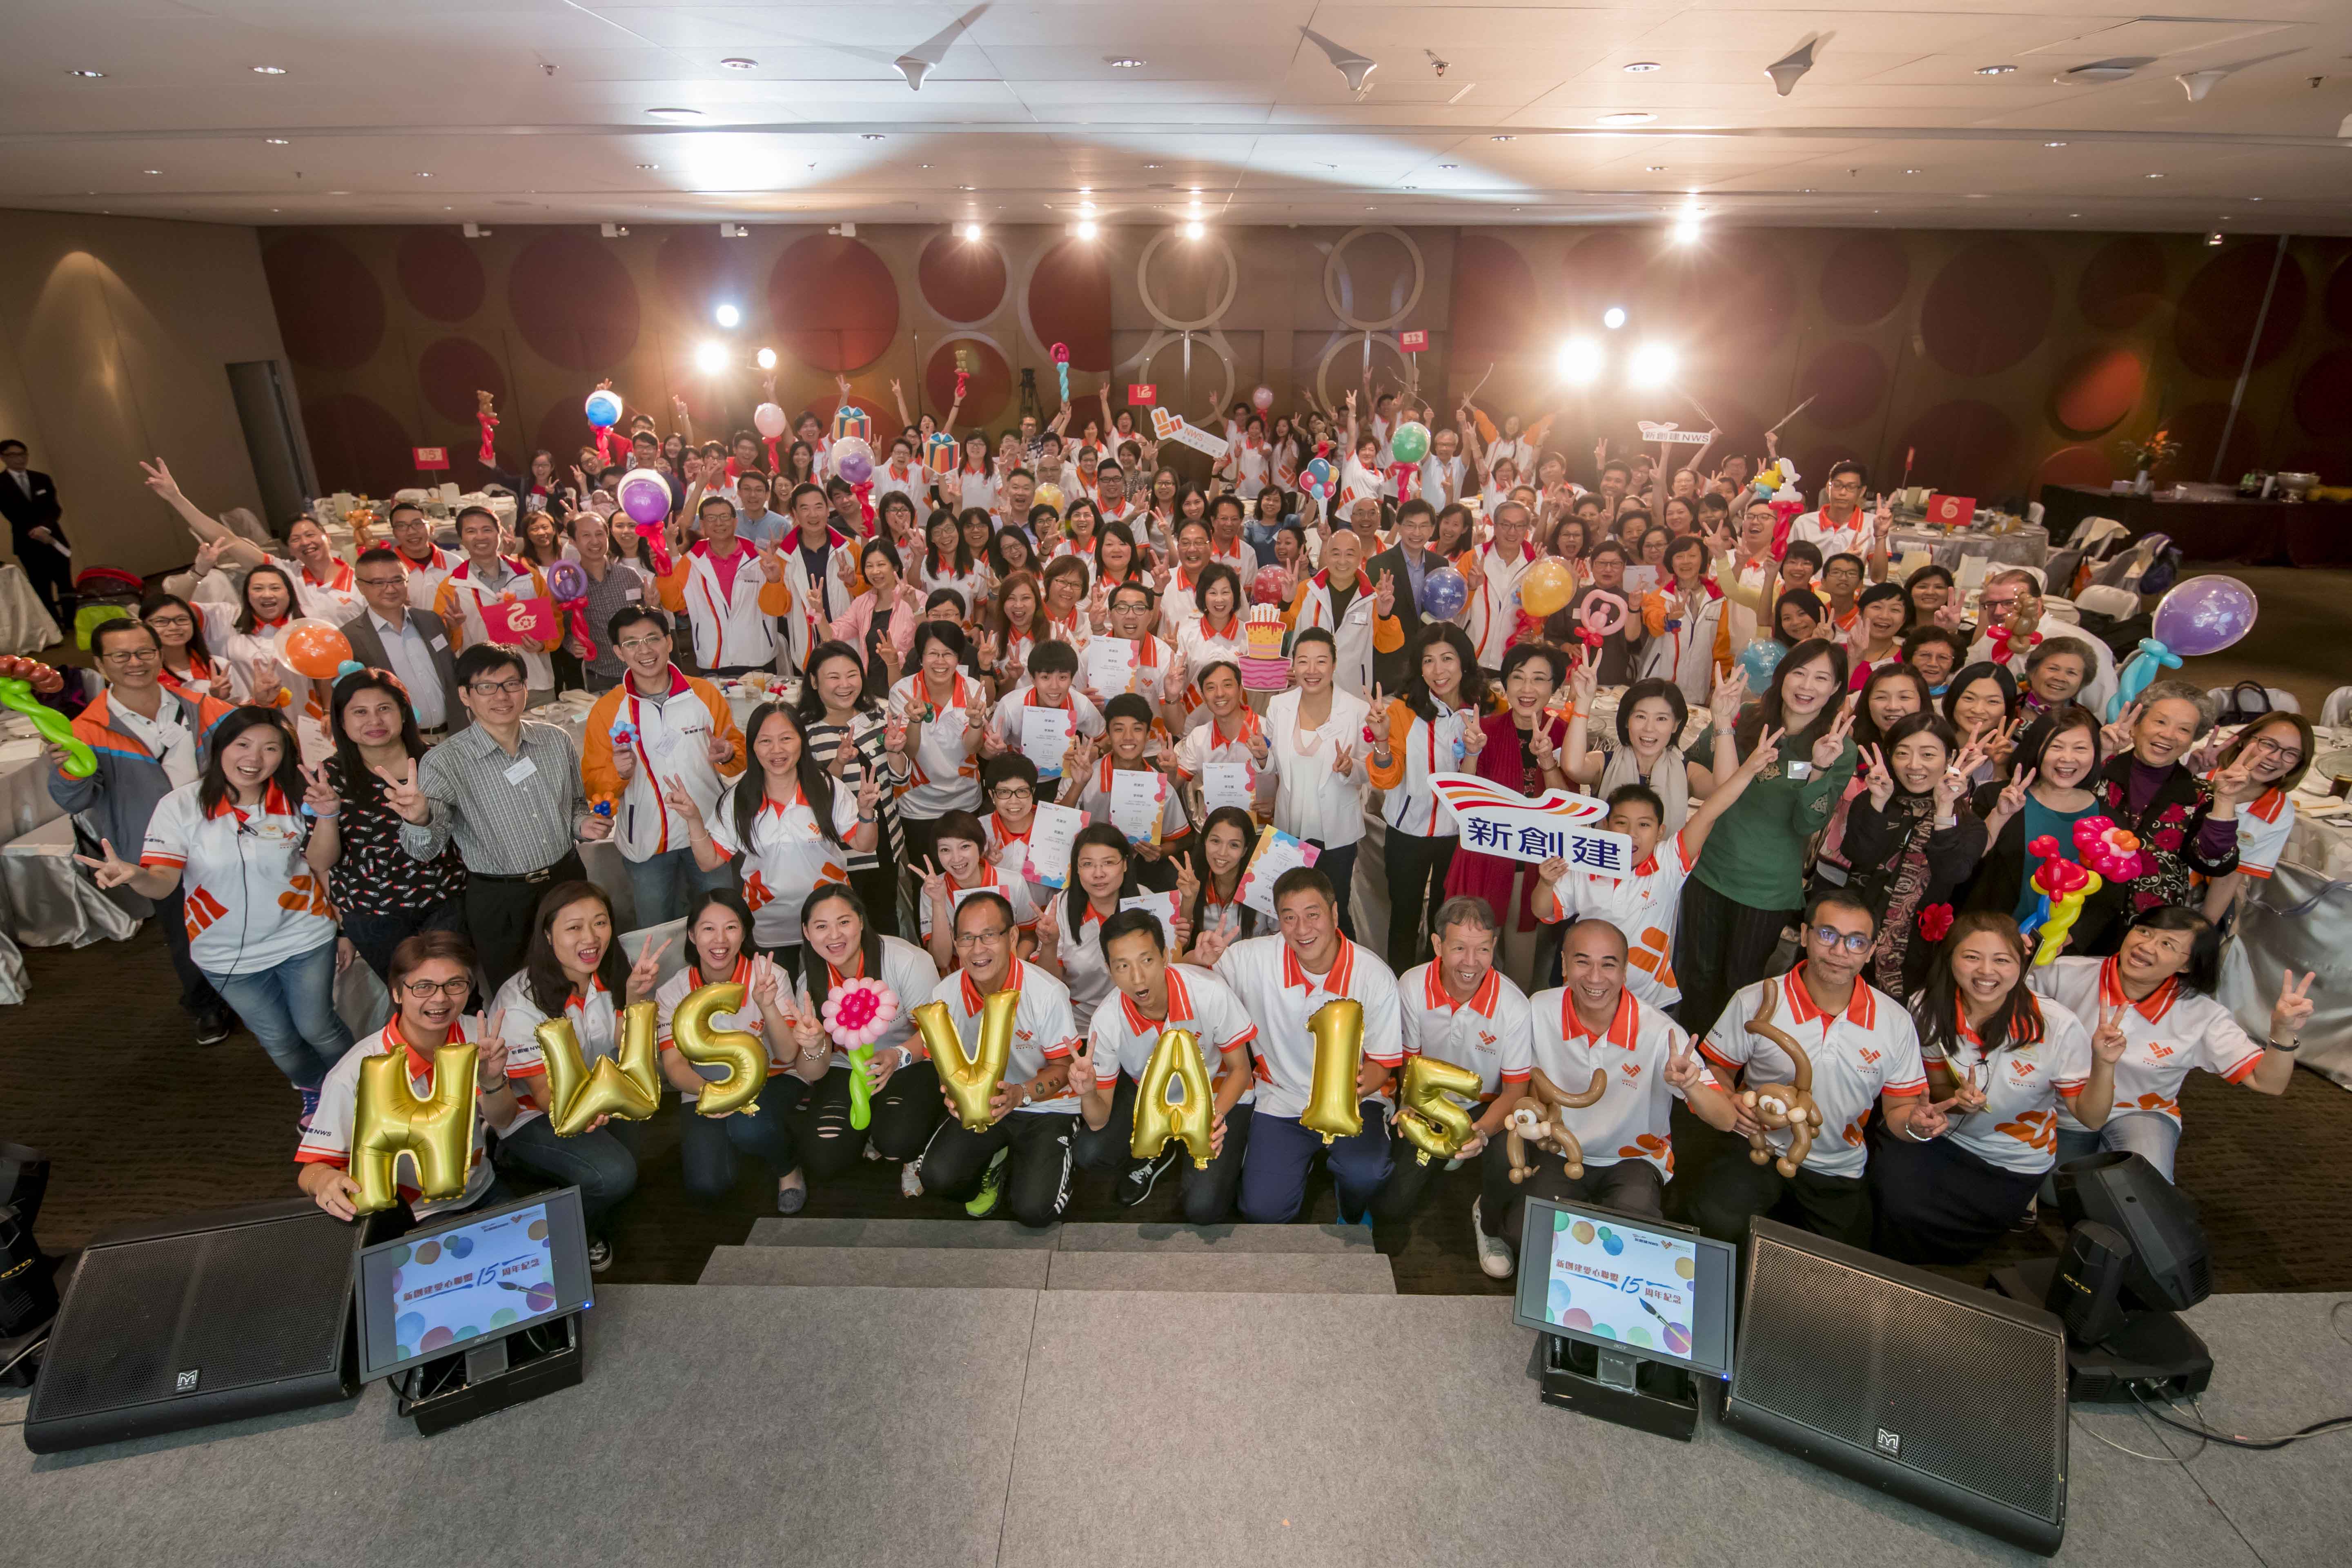 NWS Holdings celebrates 15 years of corporate volunteering